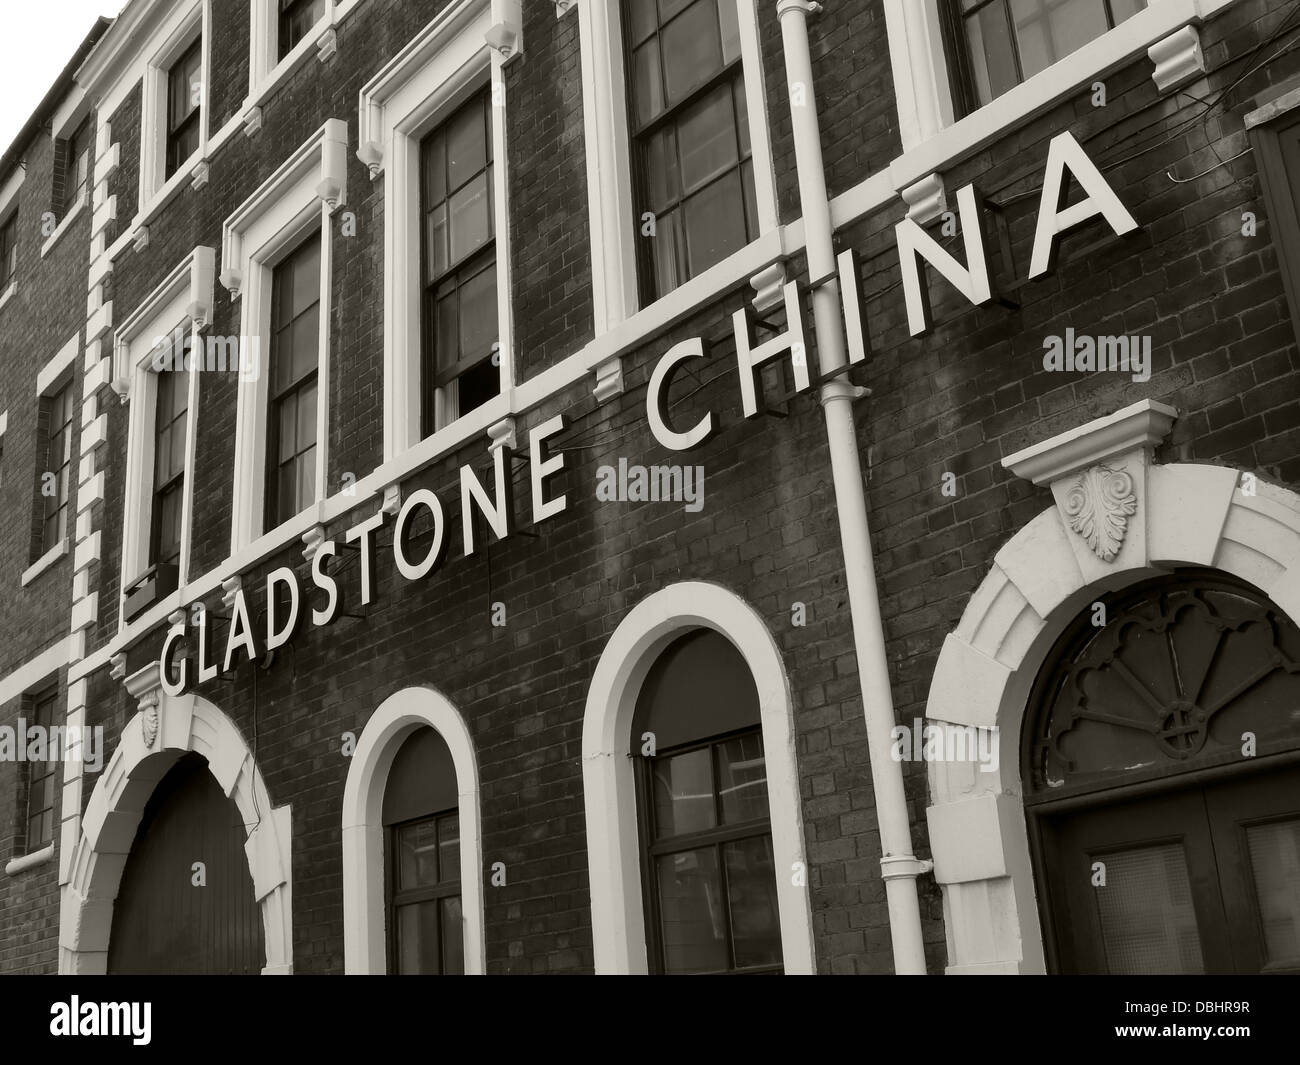 Le Gladstone de monochrome Chine usine de Longton , Stoke-on-Trent , Staffordshire Potteries , anglais , Midlands Angleterre GO Banque D'Images